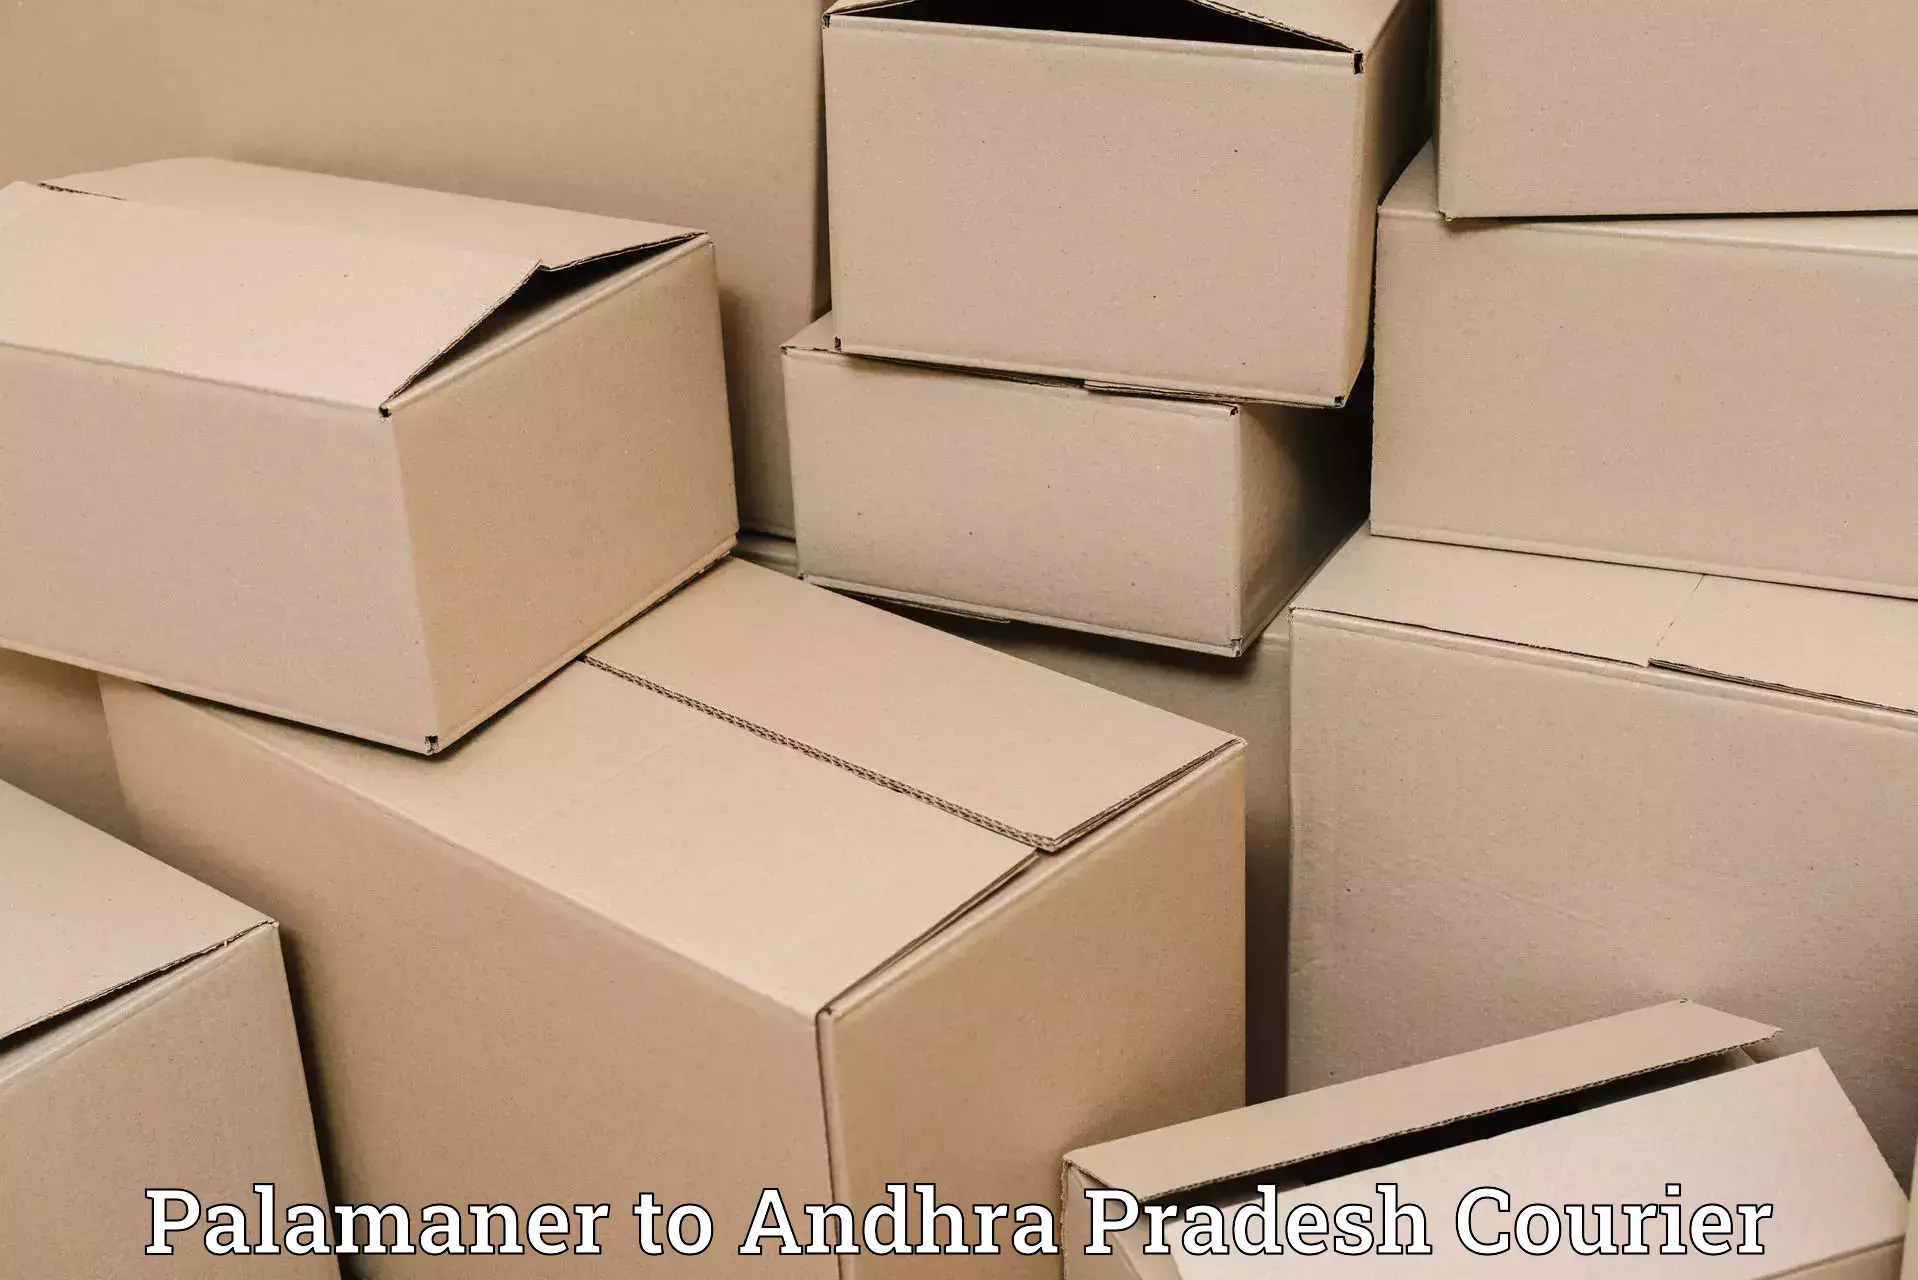 On-demand shipping options Palamaner to Gudivada